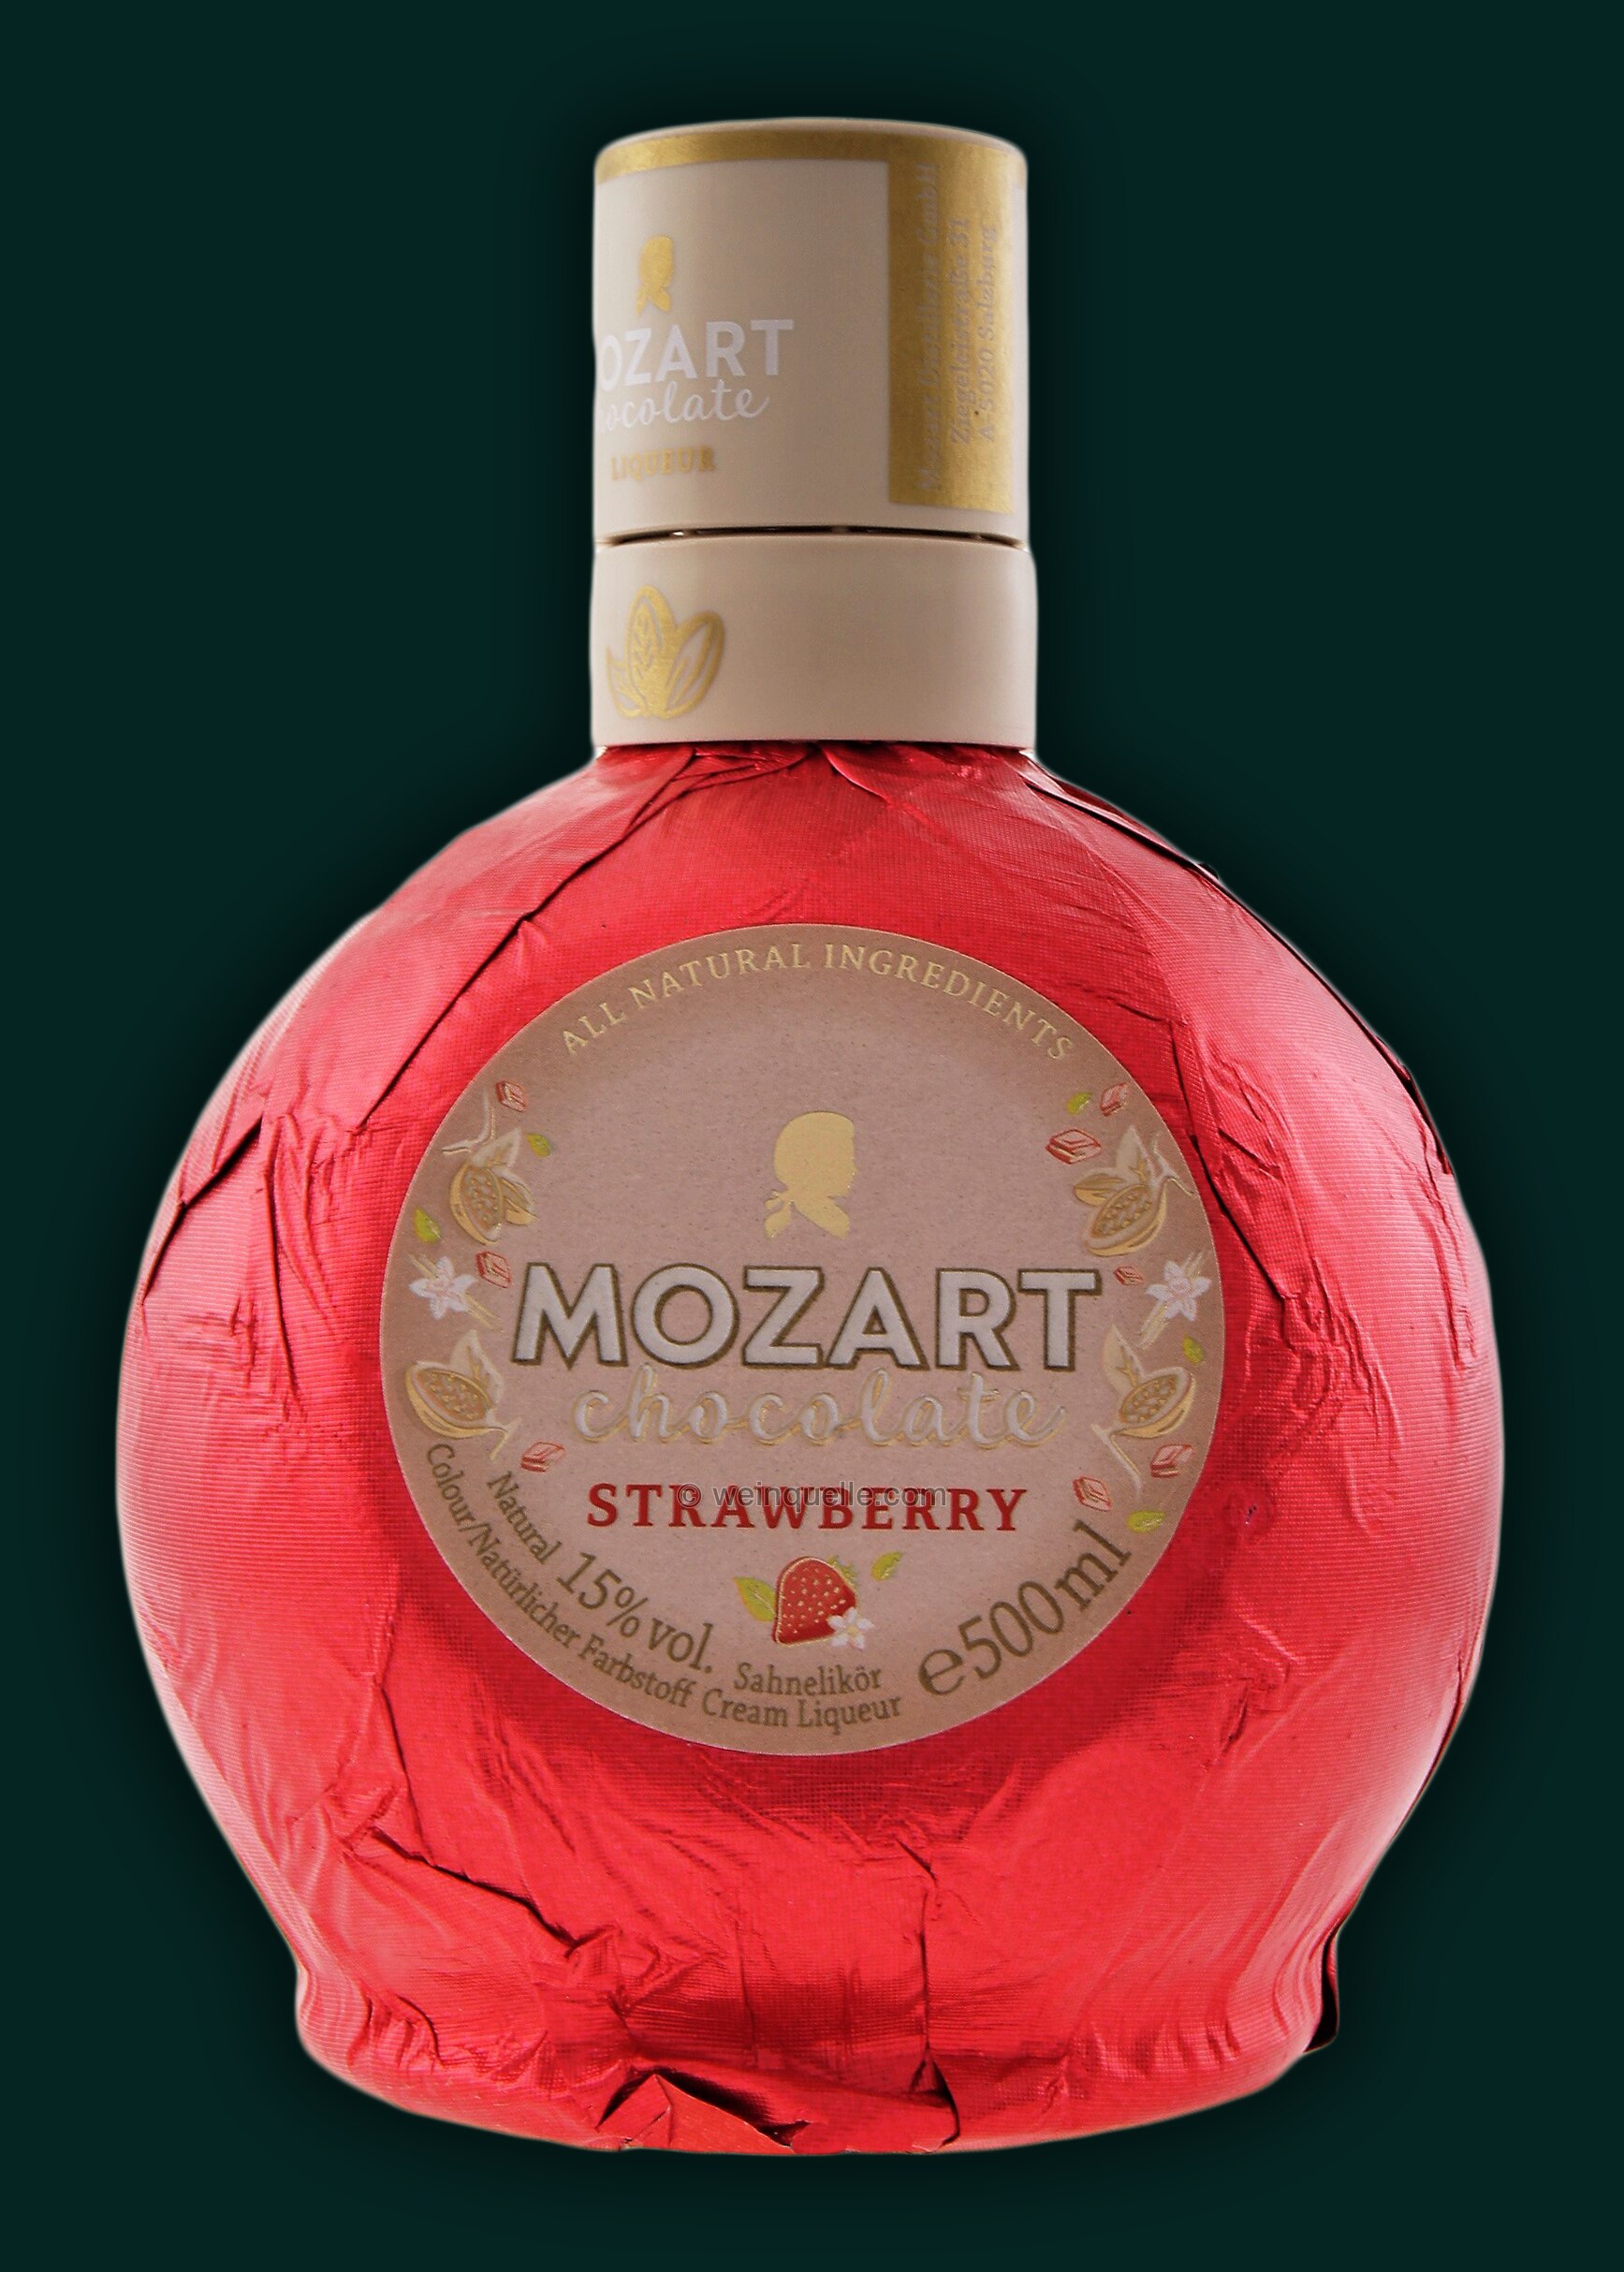 0,5 Cream 13,75 Weinquelle Chocolate Strawberry - € Liter, Mozart Lühmann White